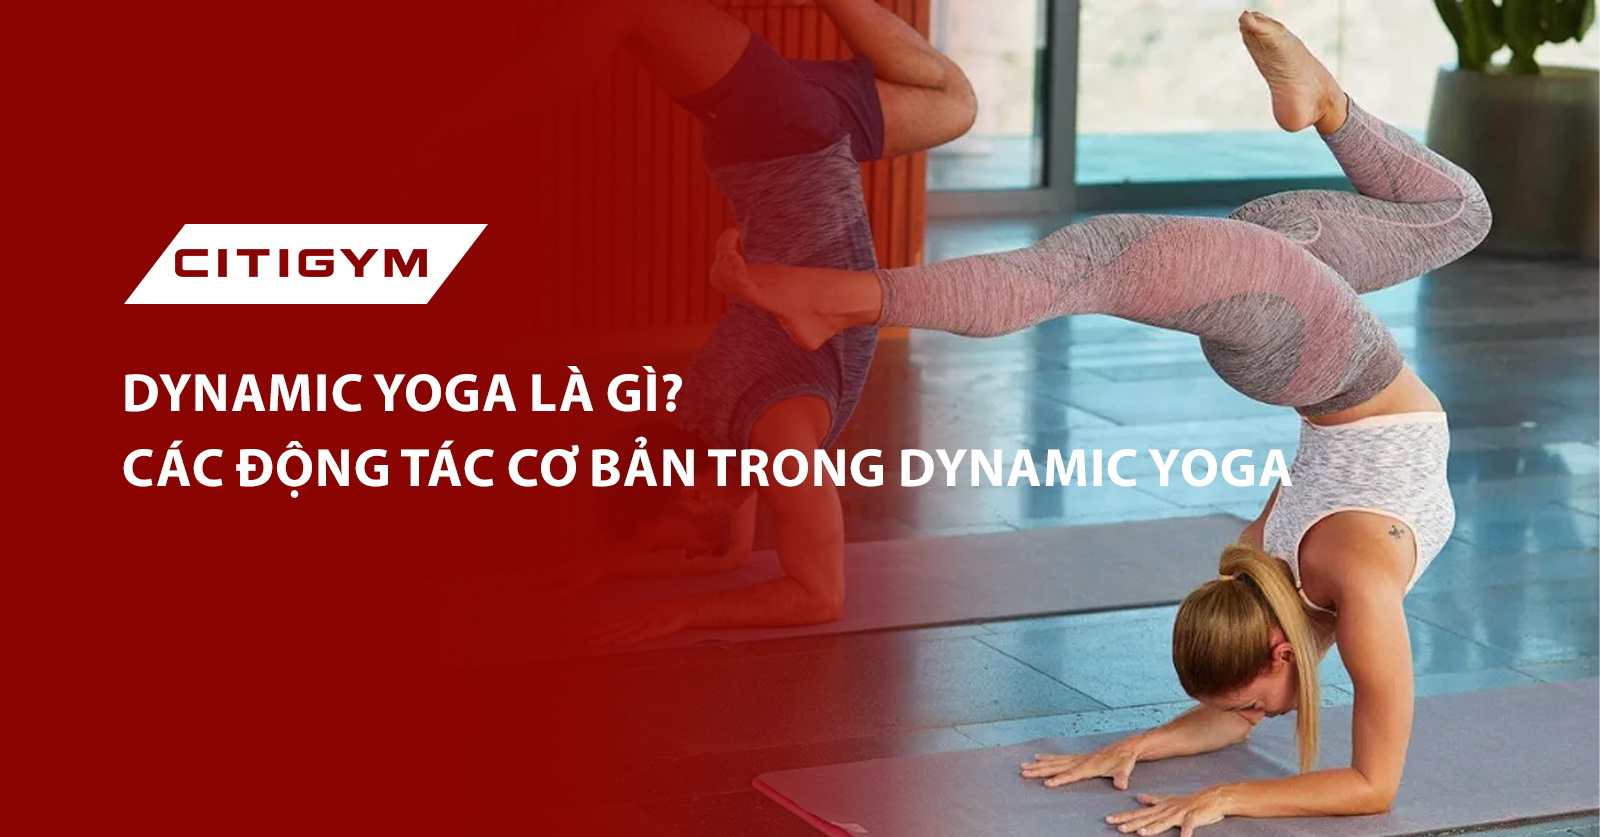 Dynamic yoga là gì? Các động tác cơ bản trong Dynamic yoga